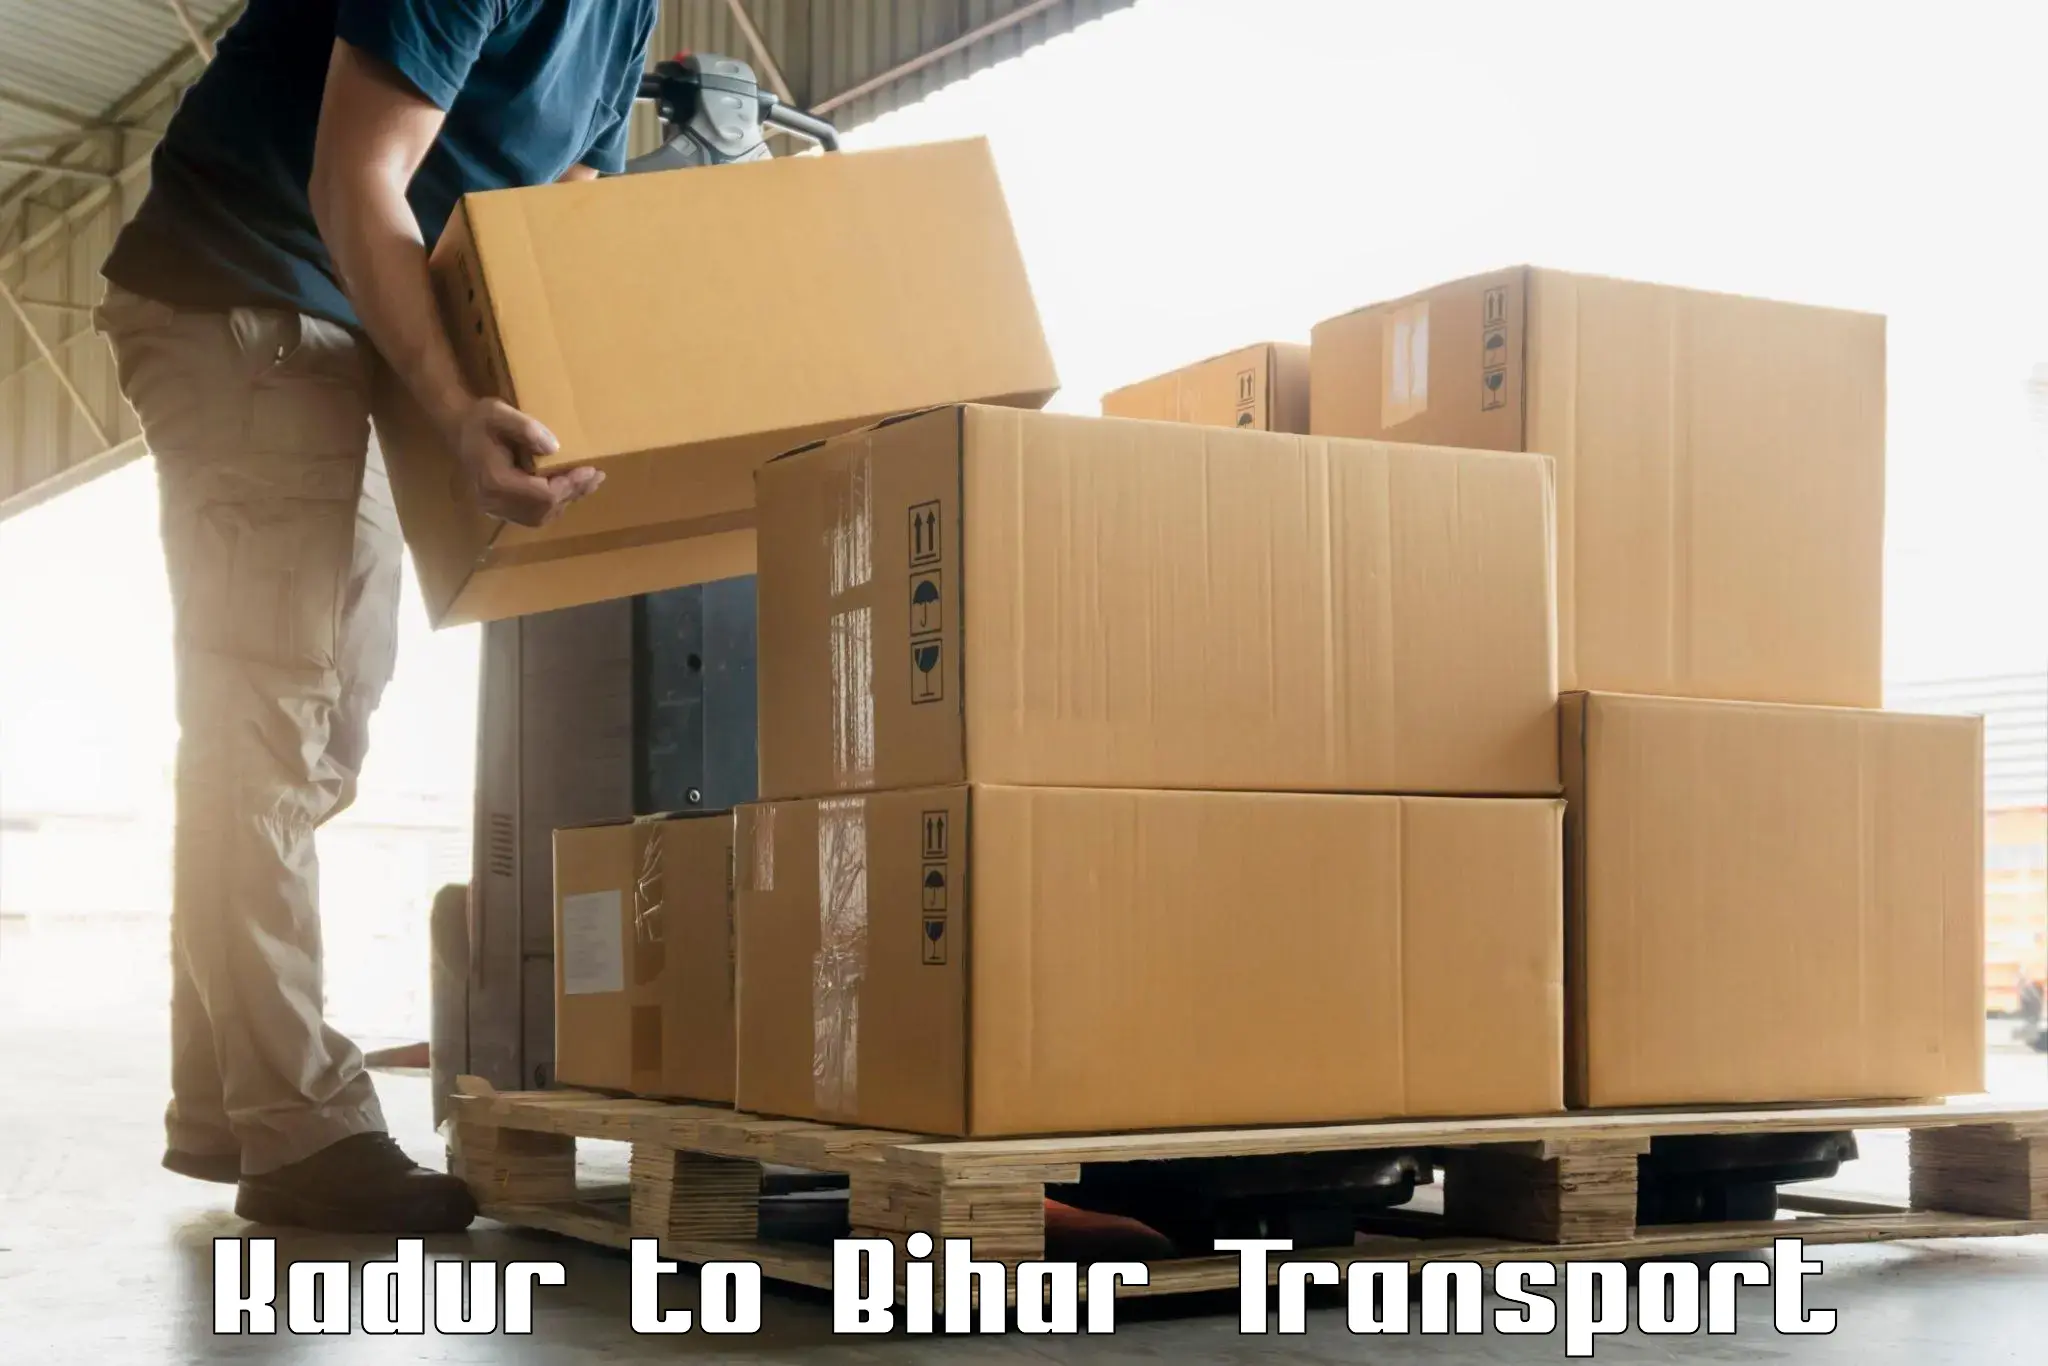 Online transport Kadur to Dhaka